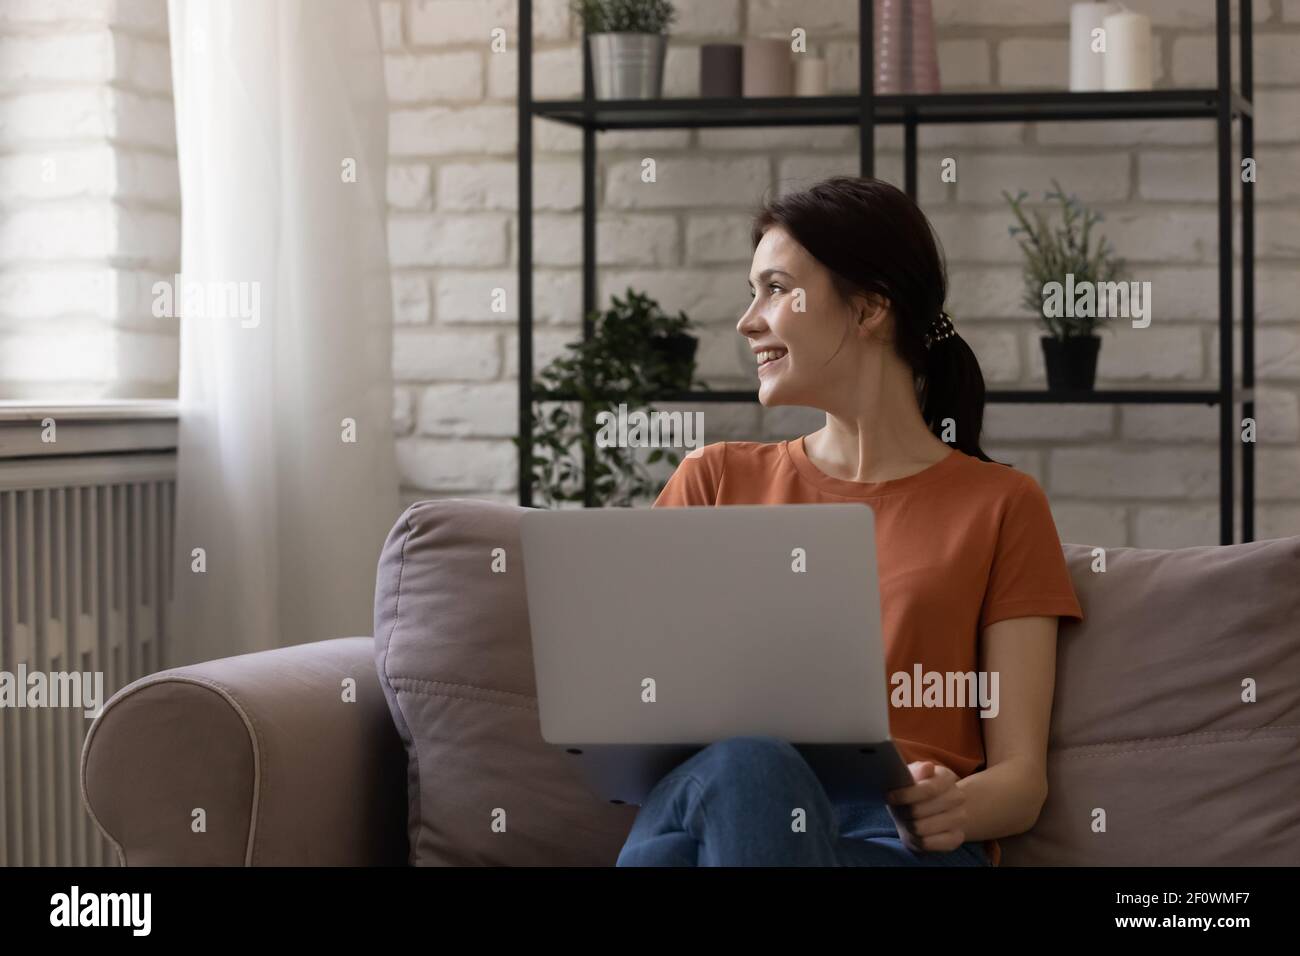 Une adolescente souriante et rêveuse distraite de l'écran d'un ordinateur portable. Faites une pause Banque D'Images